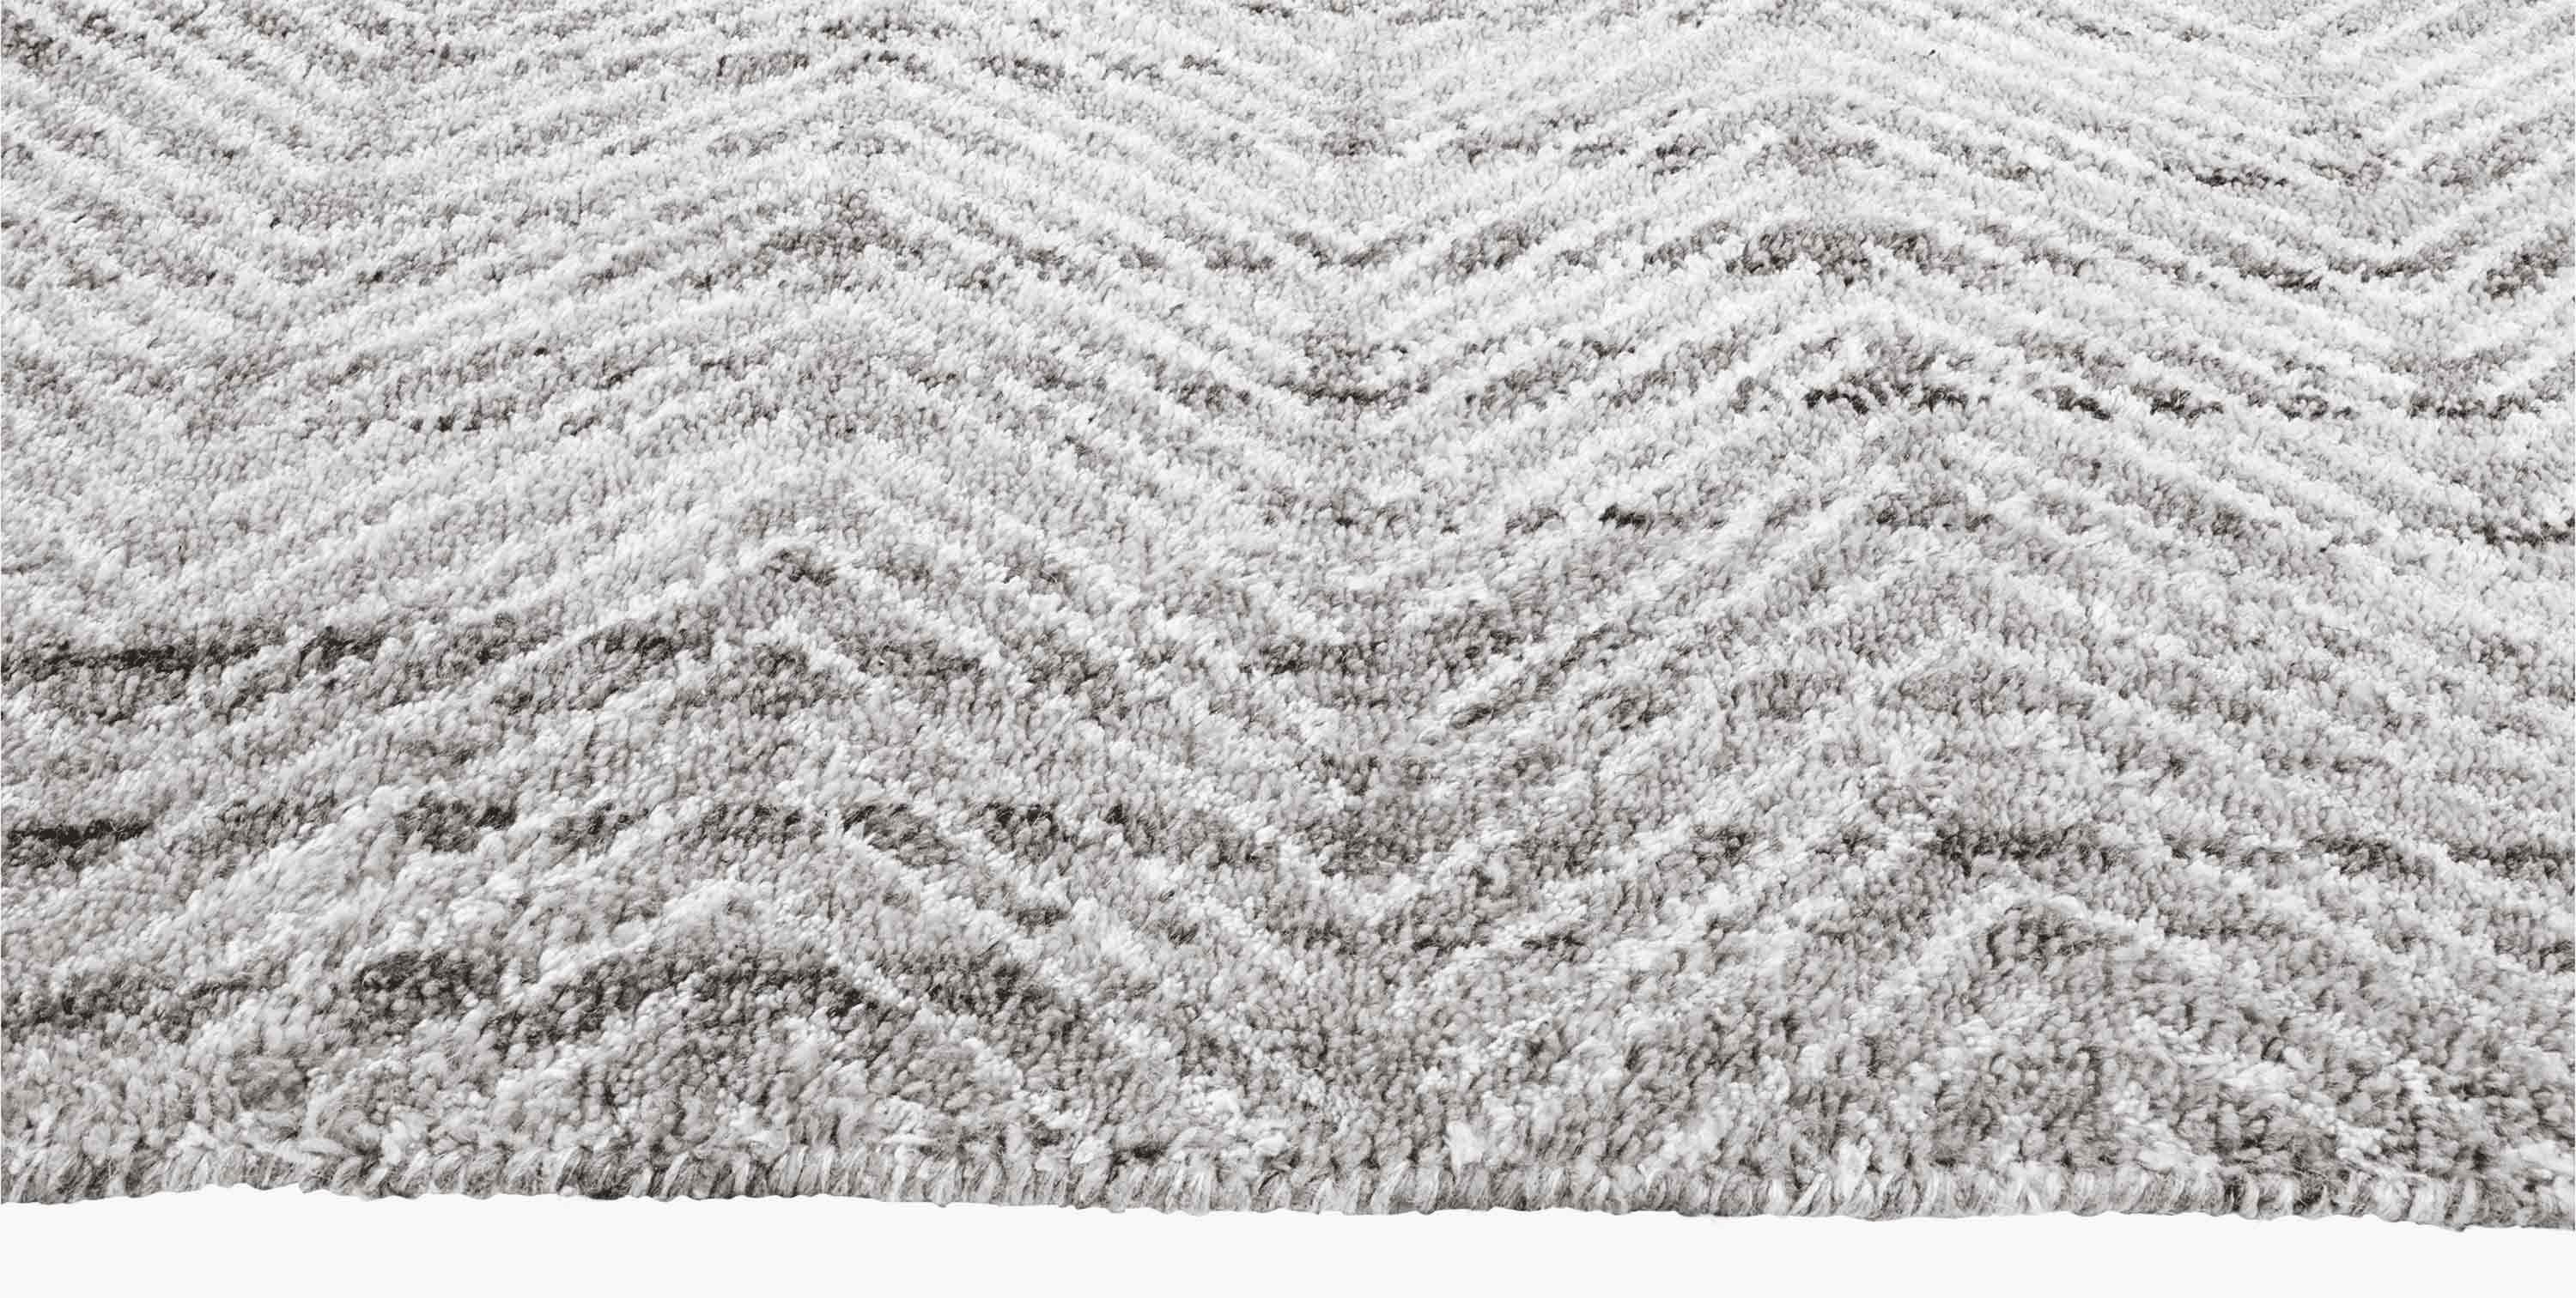 For Sale: Gray (Silver/White) Ben Soleimani Alia Rug– Hand-woven Chevron Wool + Viscose Black/Gray 9'x12' 3